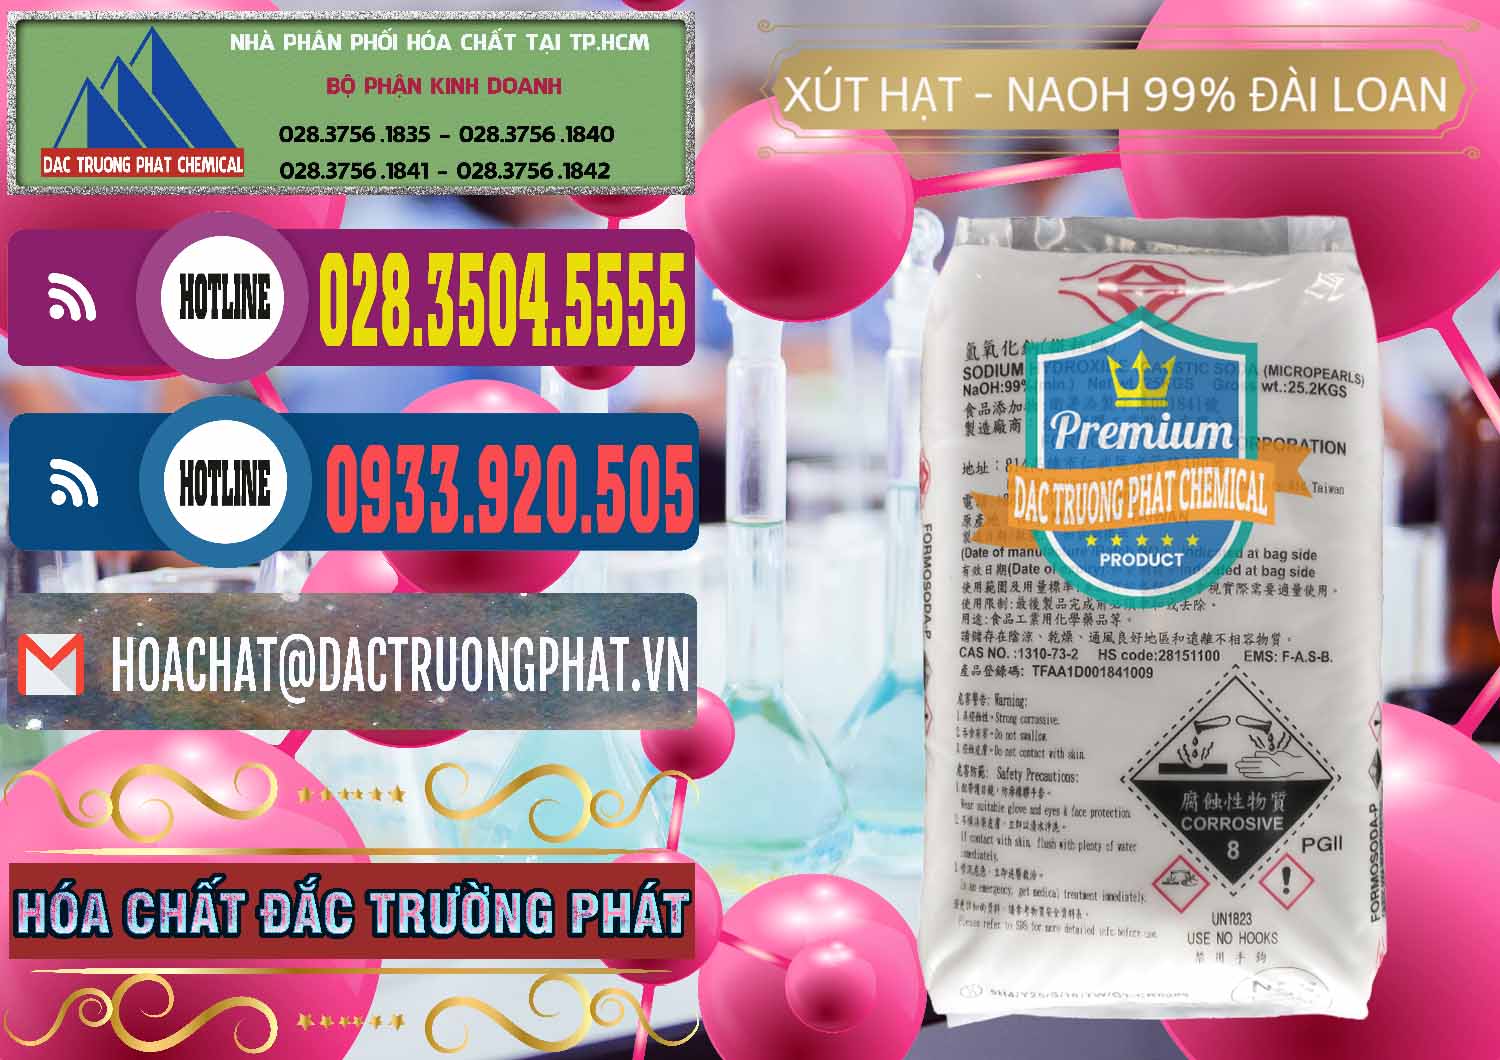 Bán - cung ứng Xút Hạt - NaOH Bột 99% Đài Loan Taiwan Formosa - 0167 - Nơi phân phối - cung cấp hóa chất tại TP.HCM - muabanhoachat.com.vn